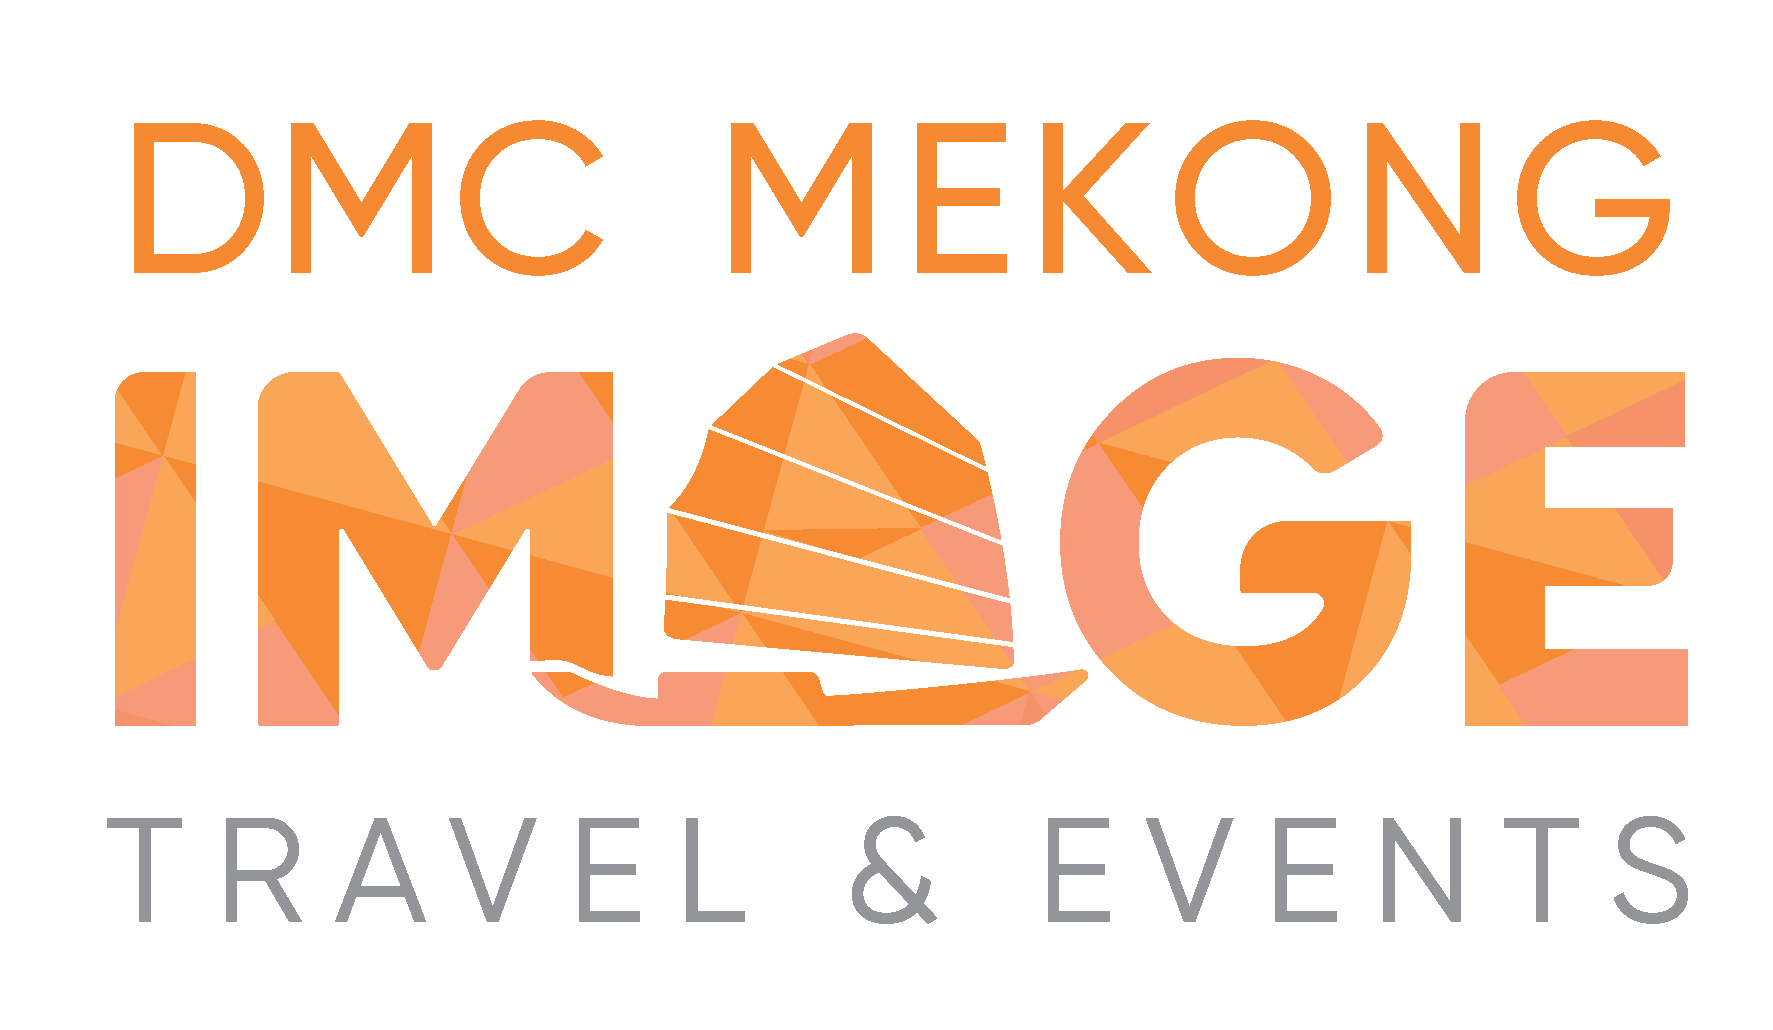 DMC Mekong Image